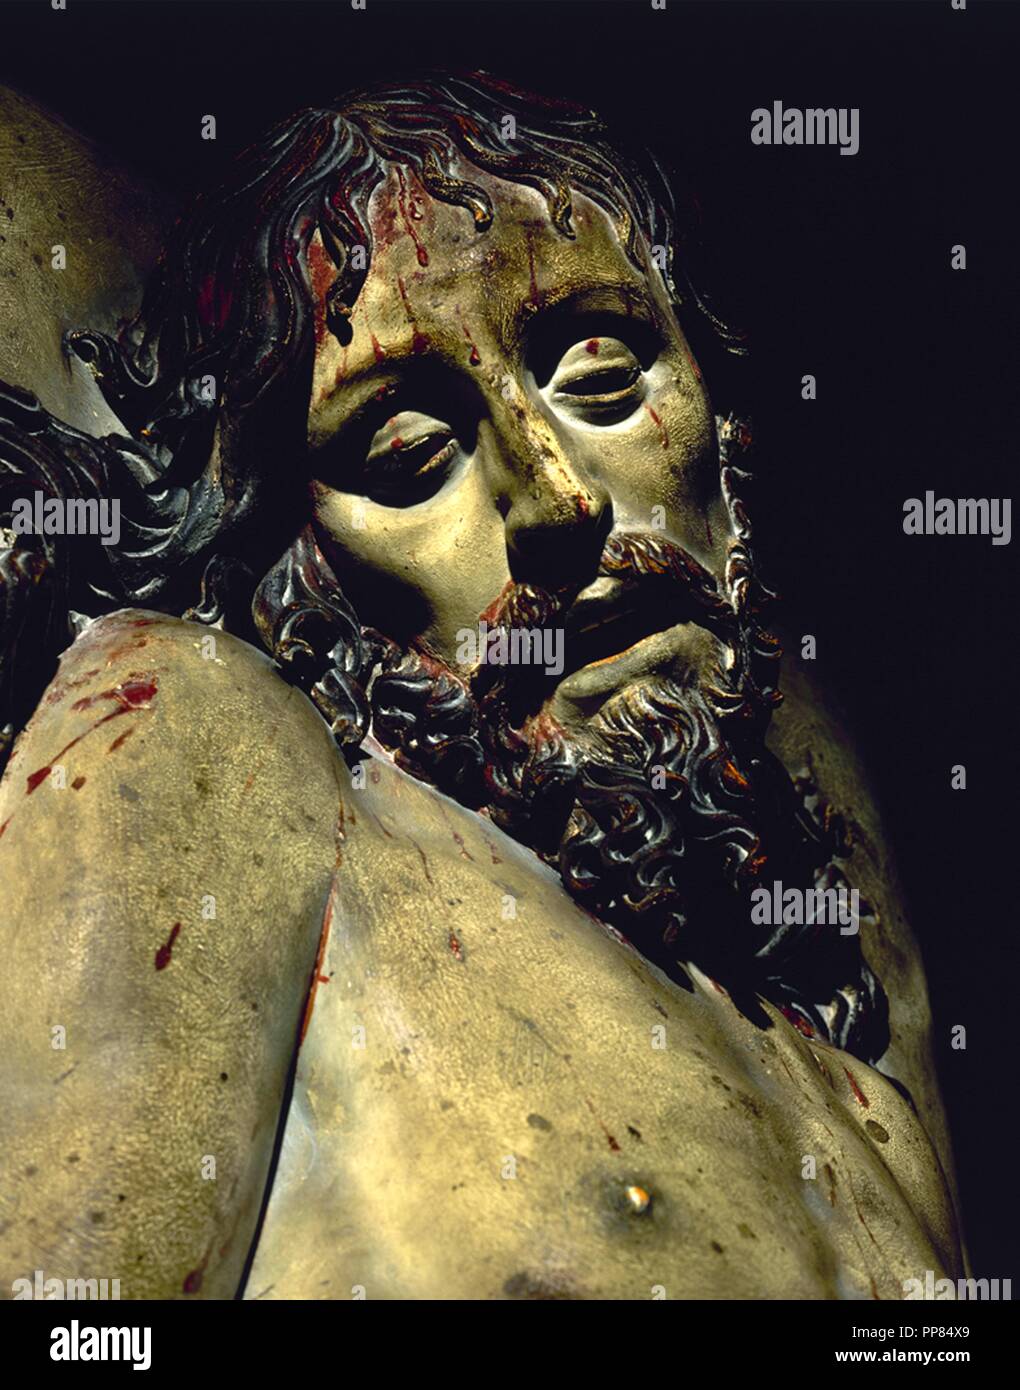 Cristo Yecente (detalle de la cabeza), 1627. Museum: MUSEO NACIONAL DE ESCULTURA, VALLADOLID, ESPAÑA. Author: FERNANDEZ, GREGORIO. Stock Photo